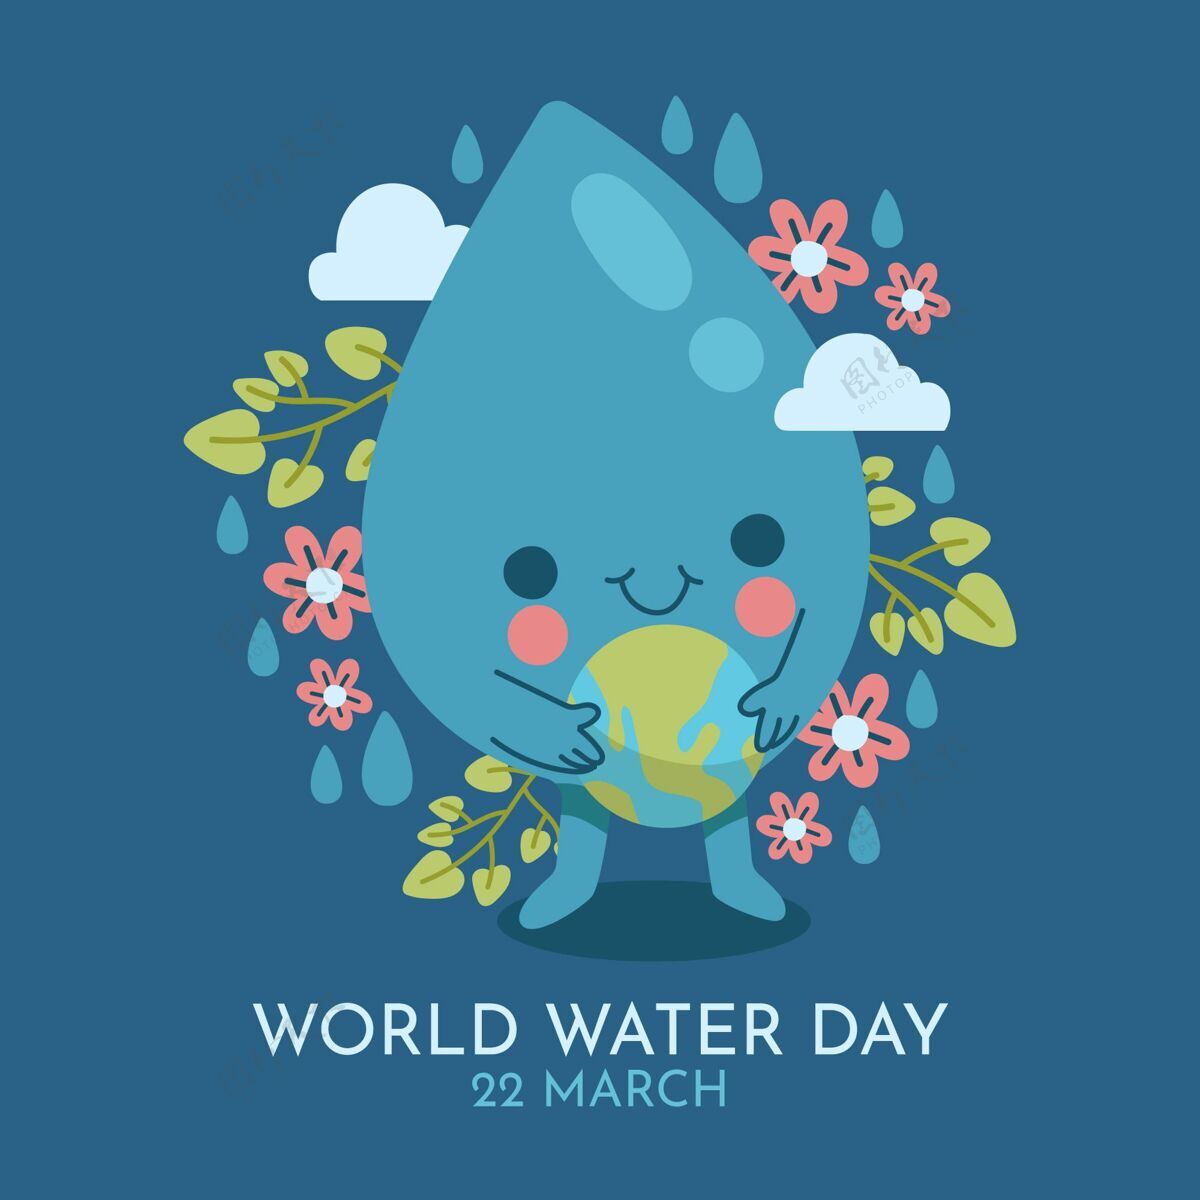 设计世界水日活动风格节日世界水日